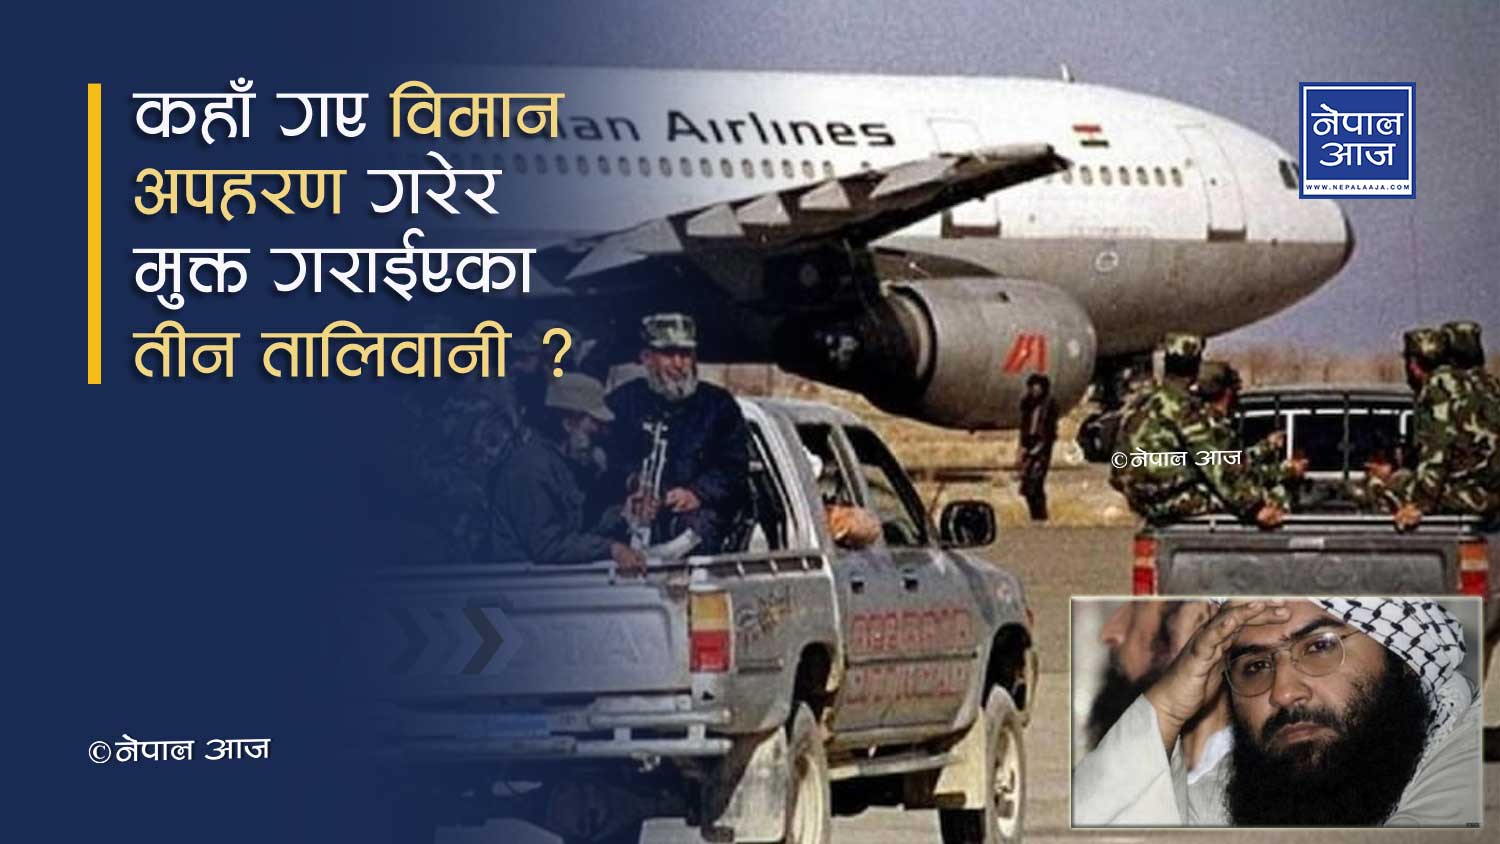 तालिवानको नेपाल सम्वन्धः २१ वर्षअघि काठमाण्डौंवाट यसरी गरेका थिए विमान अपहरण